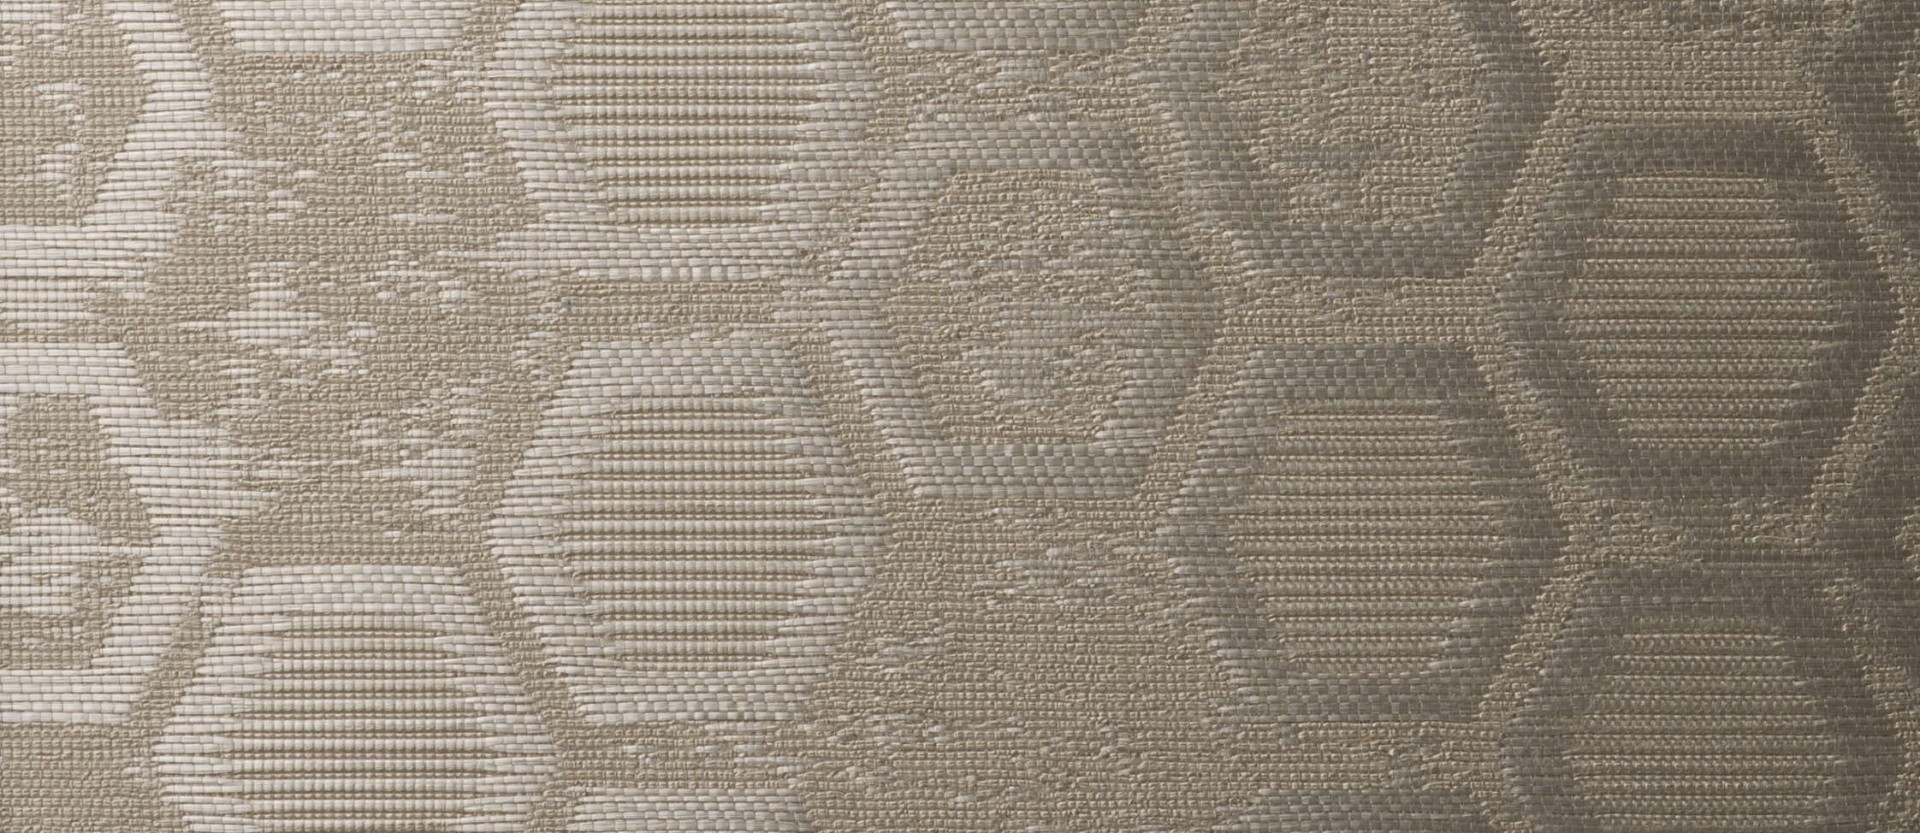 Текстильные обои Vescom Hexagon 2614.22